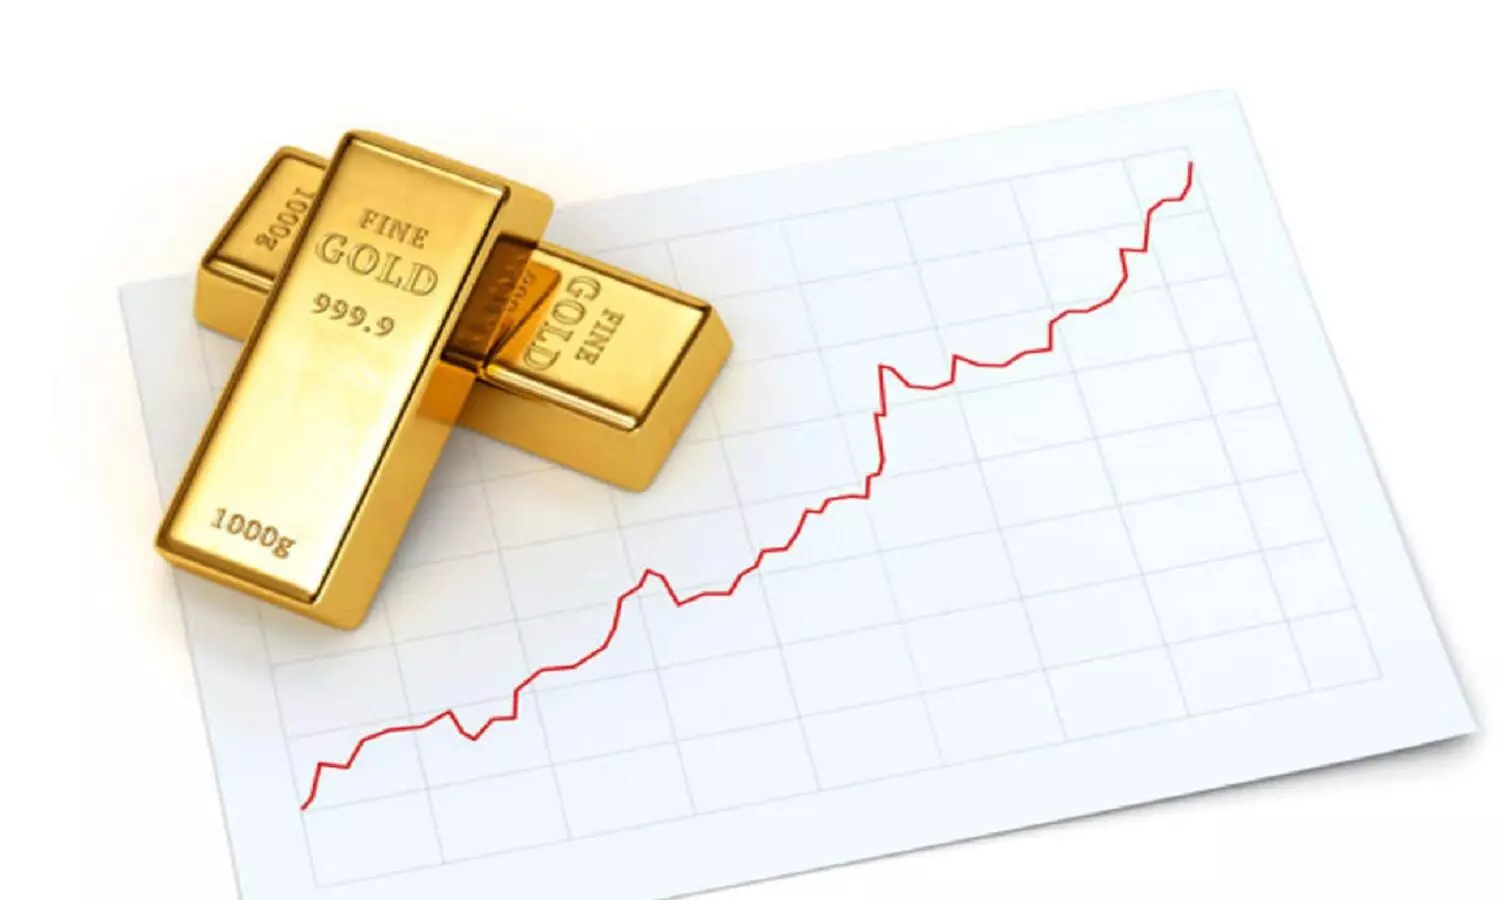 Gold Investment: 49 हज़ार रुपए का हुआ सोना, दिसम्बर तक 52 हज़ार पहुंच सकता है, गोल्ड इन्वेस्टमेंट का सही मौका